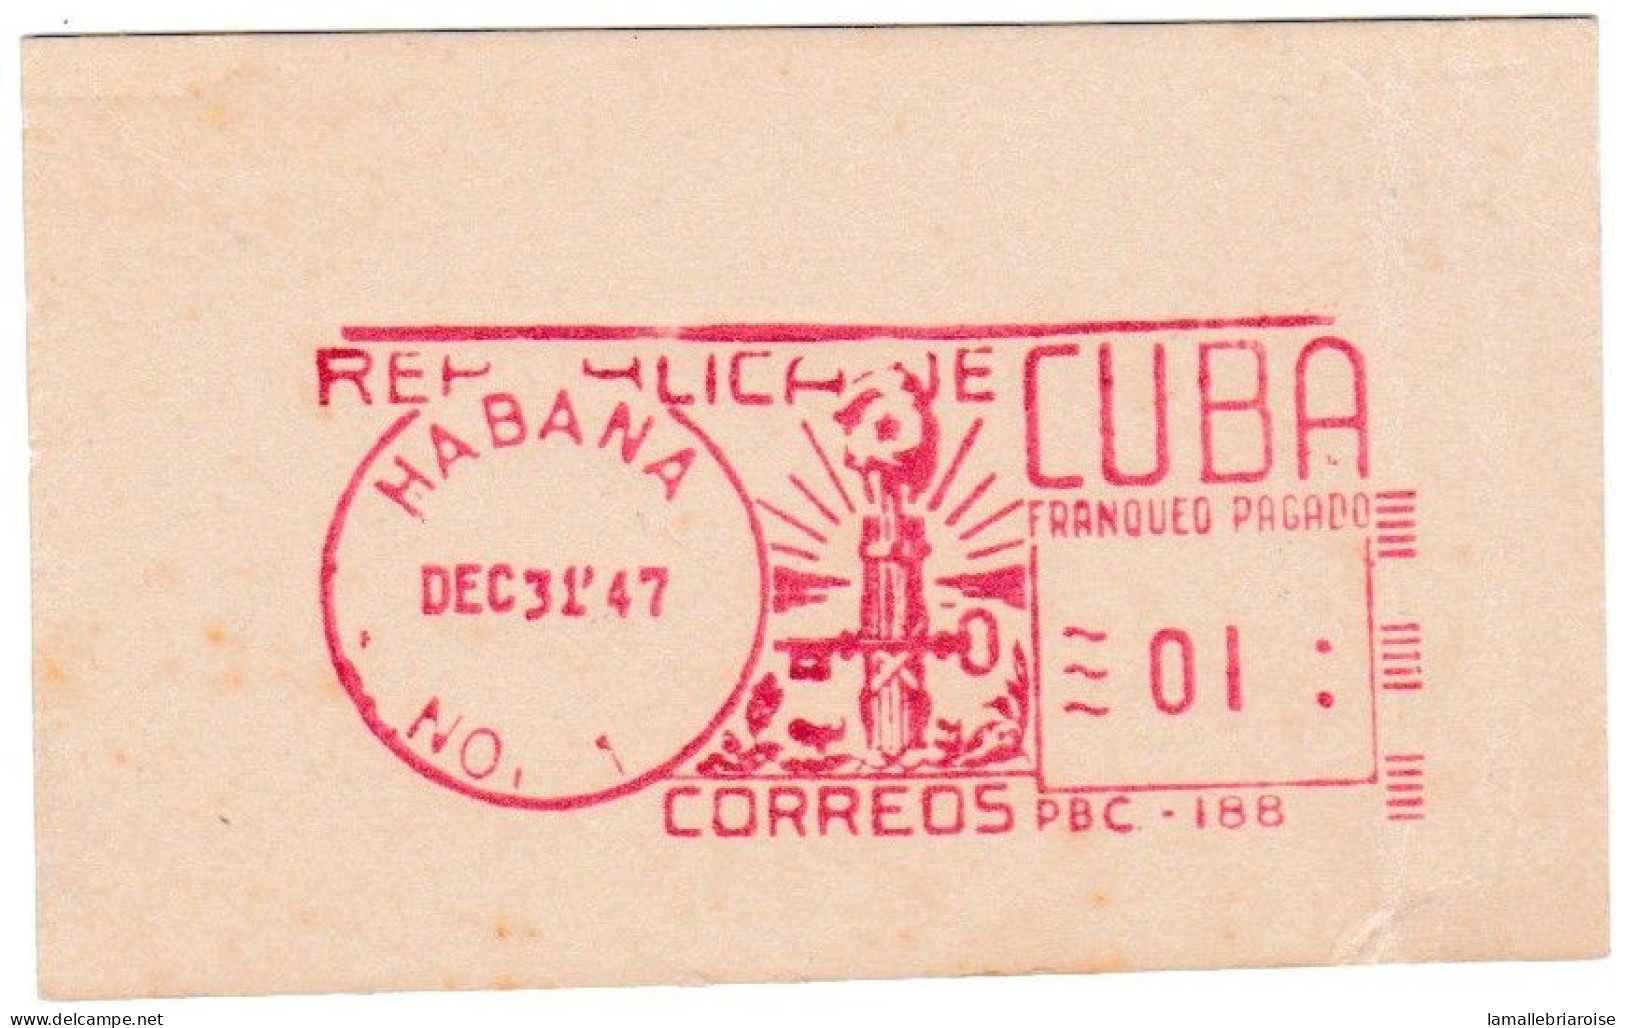 Cuba, Habana, Essai De Machine à Affranchir, 31 Décembre 1947 - Sin Dentar, Pruebas De Impresión Y Variedades